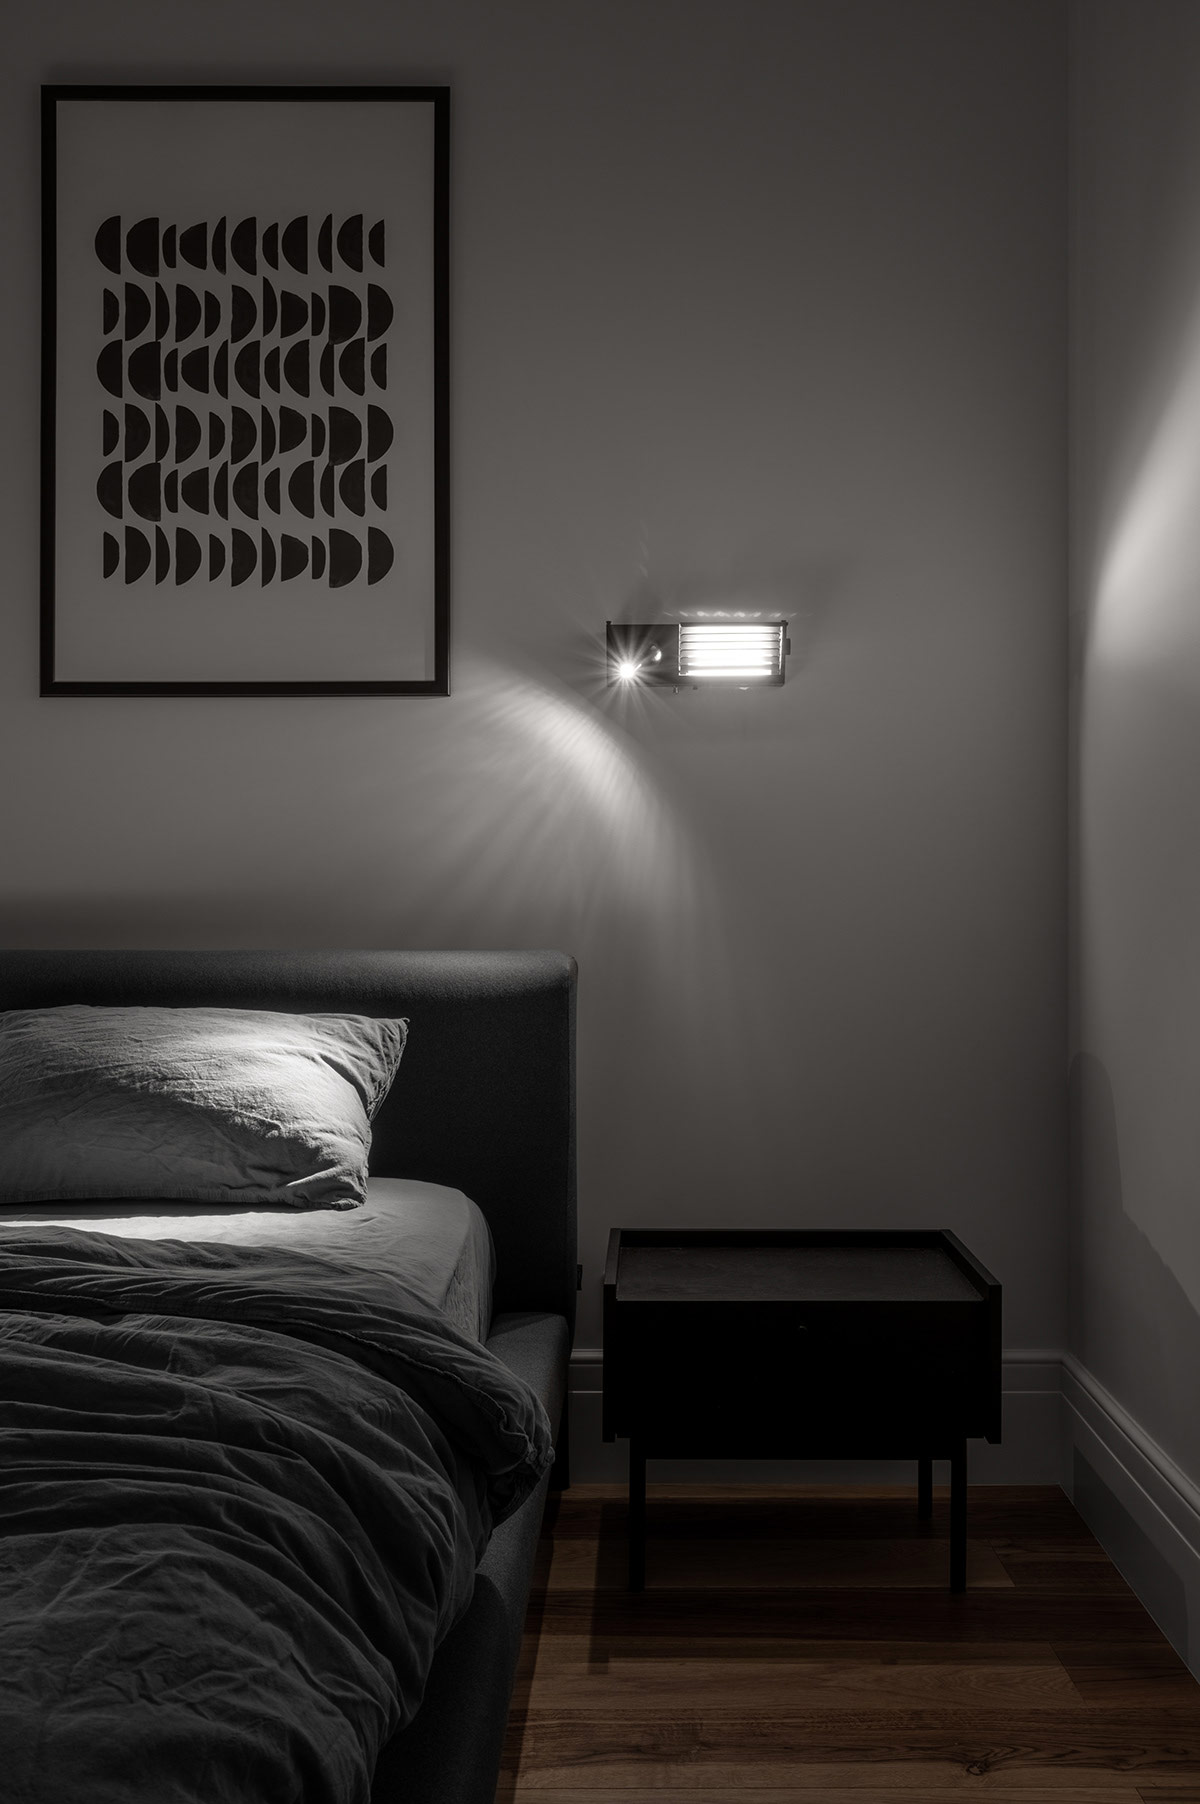 Chiếc táp đầu giường màu đen vân gỗ tự nhiên bố trí đối xứng hai bên tạo sự tương phản nhẹ nhàng với sàn nhà lát gỗ sồi màu nâu mộc mạc. Khi đêm về, chiếc đèn ngủ hiện đại giúp căn phòng trở nên đẹp mắt hơn, nó có thể điều chỉnh ánh sáng để chủ nhân đọc sách.